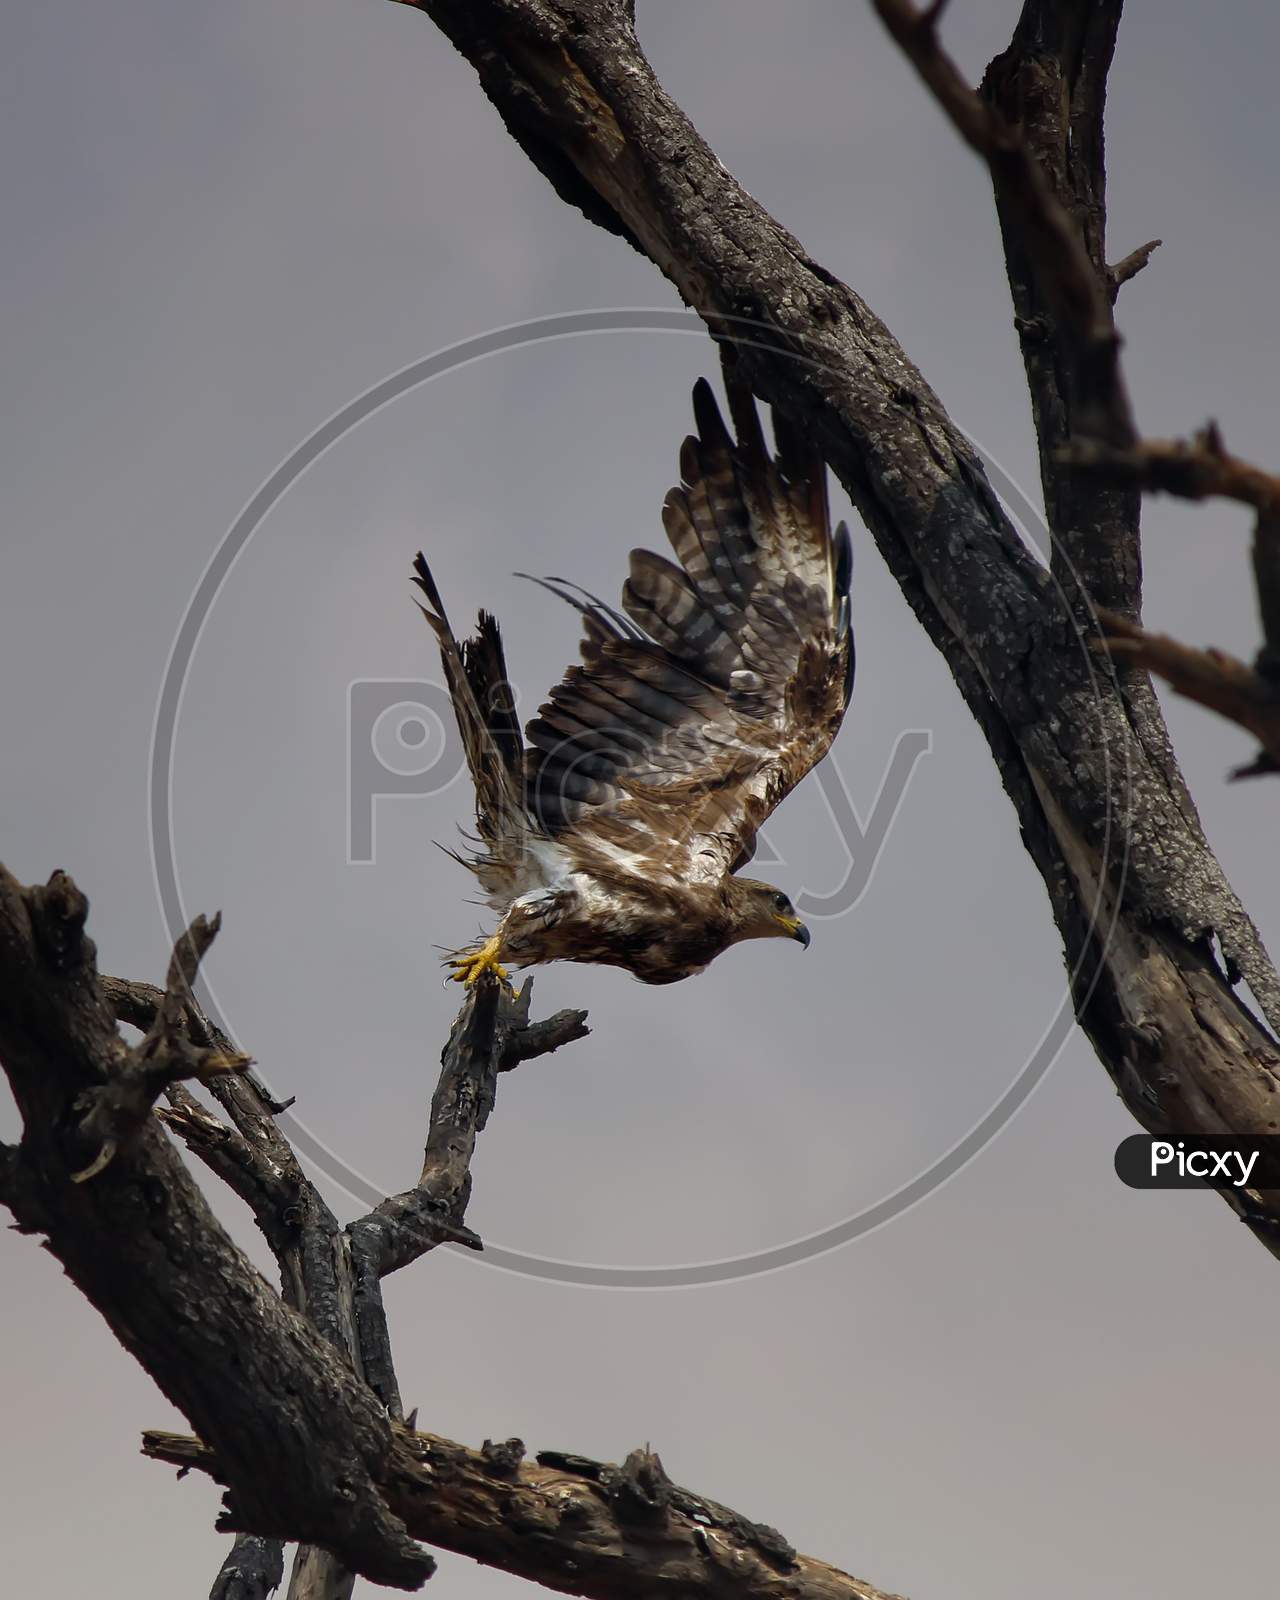 Vertical shot of an eagle flying